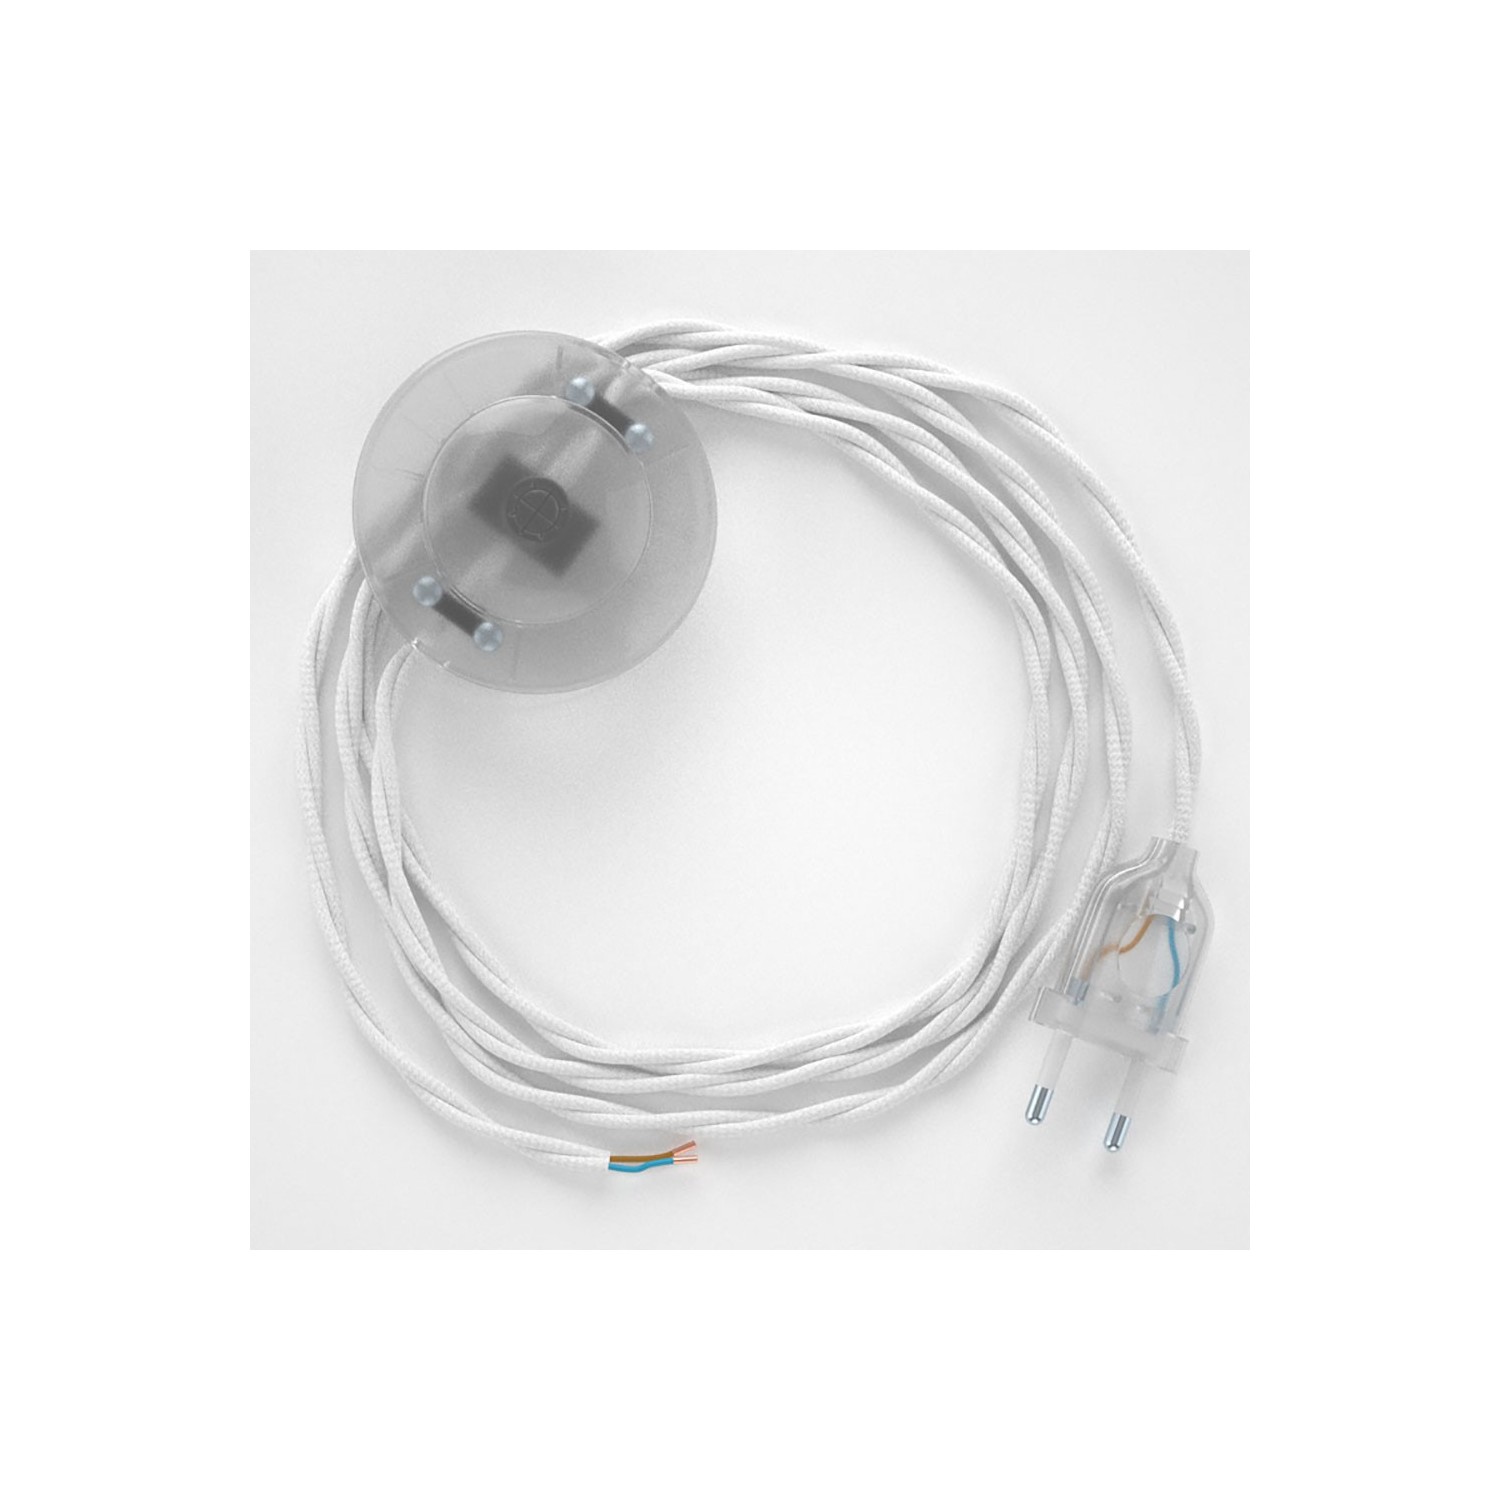 Cordon pour lampadaire, câble TM01 Effet Soie Blanc 3 m. Choisissez la couleur de la fiche et de l'interrupteur!